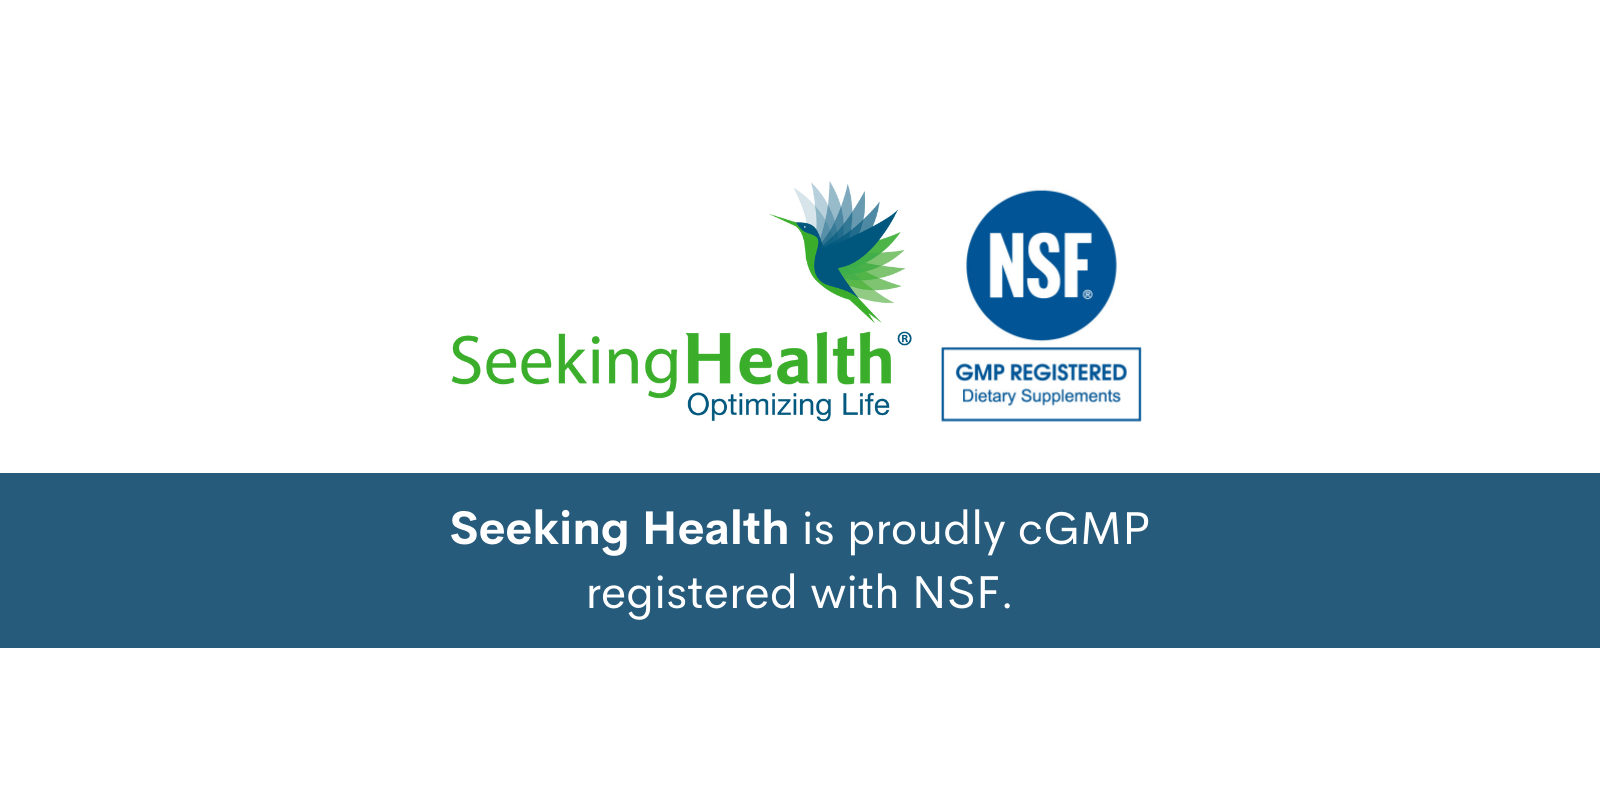 Seeking Health is cGMP Registered